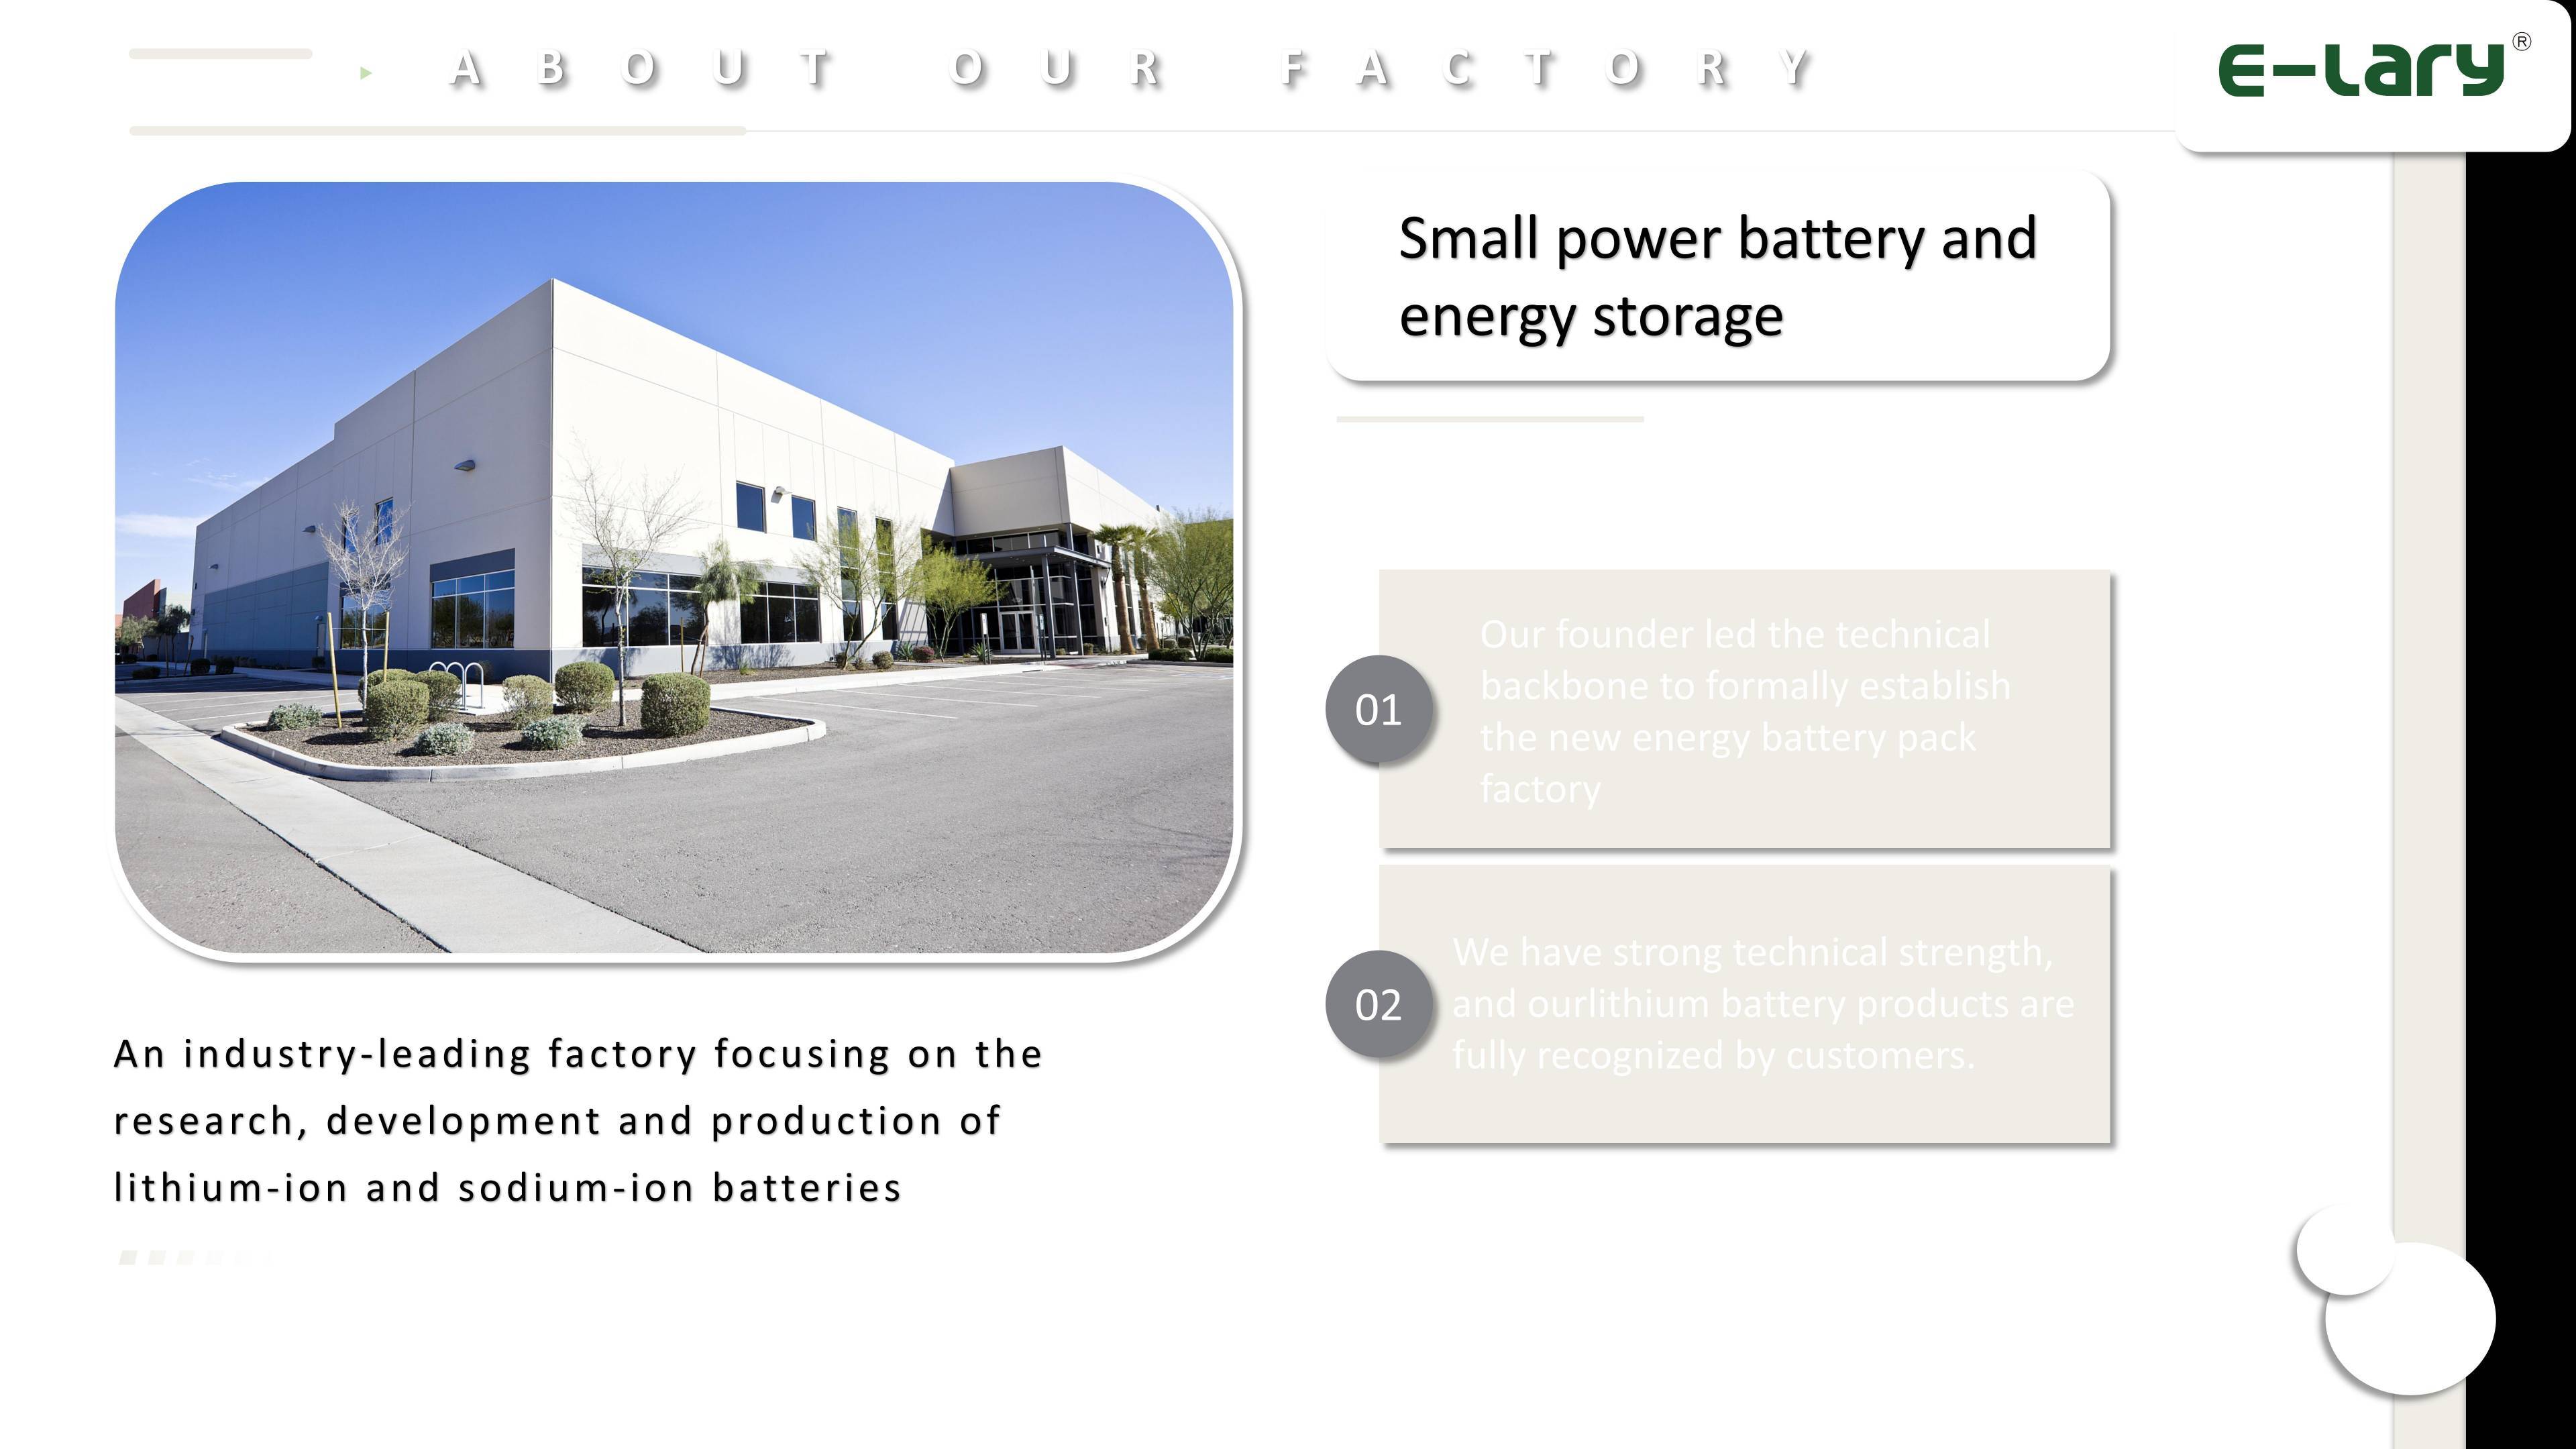 Perfil de la empresa E-lary sobre baterías de litio para motocicletas